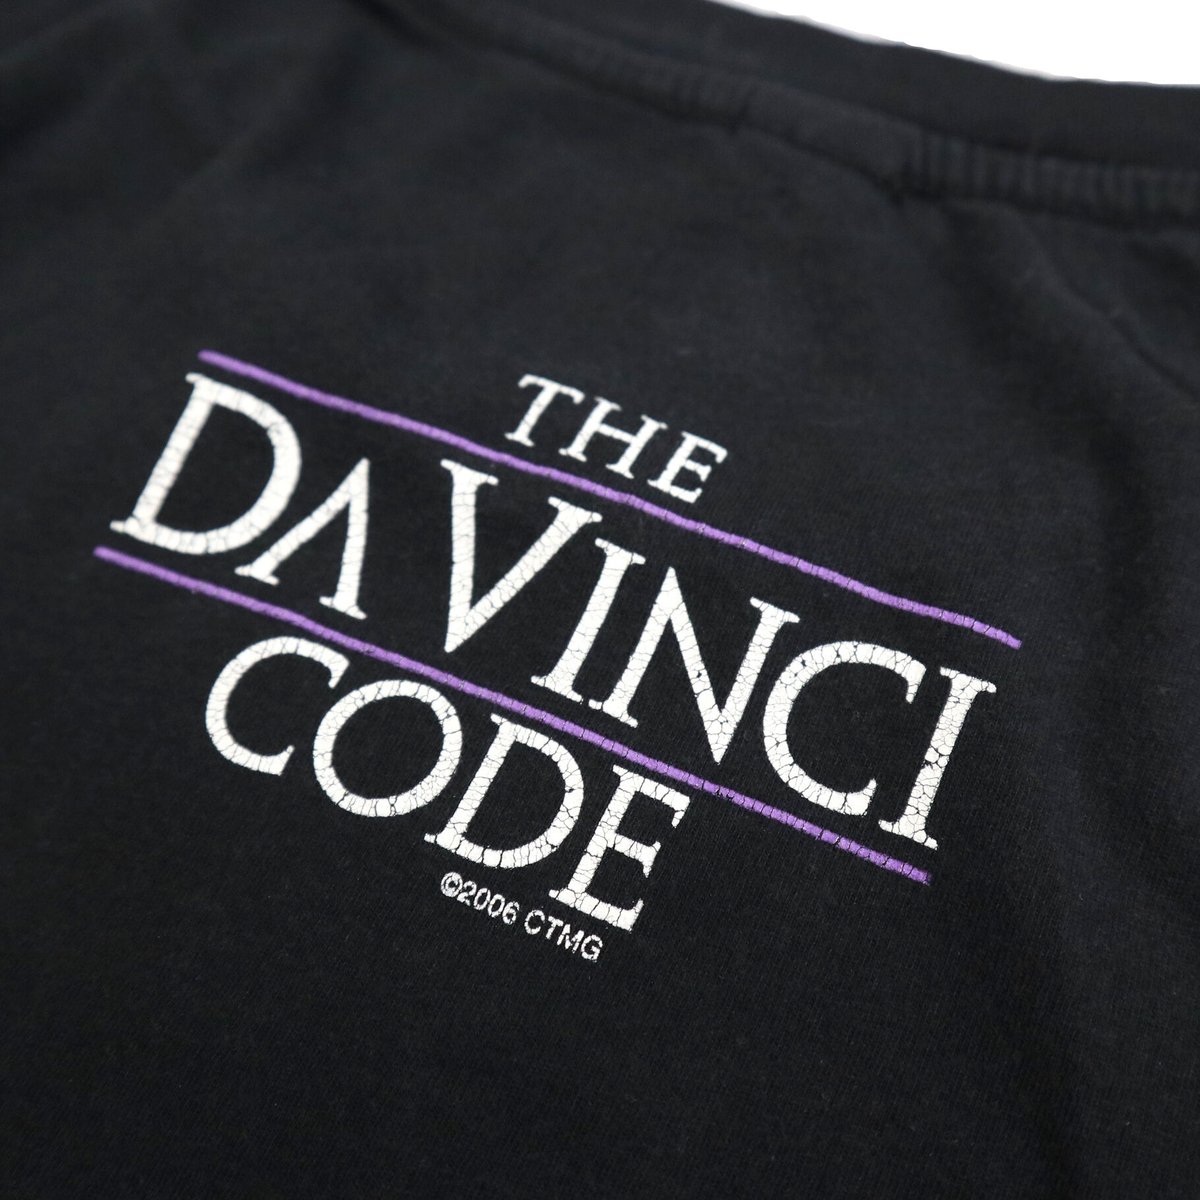 's The Da Vinci Code "SO DARK THE CON OF MAN"